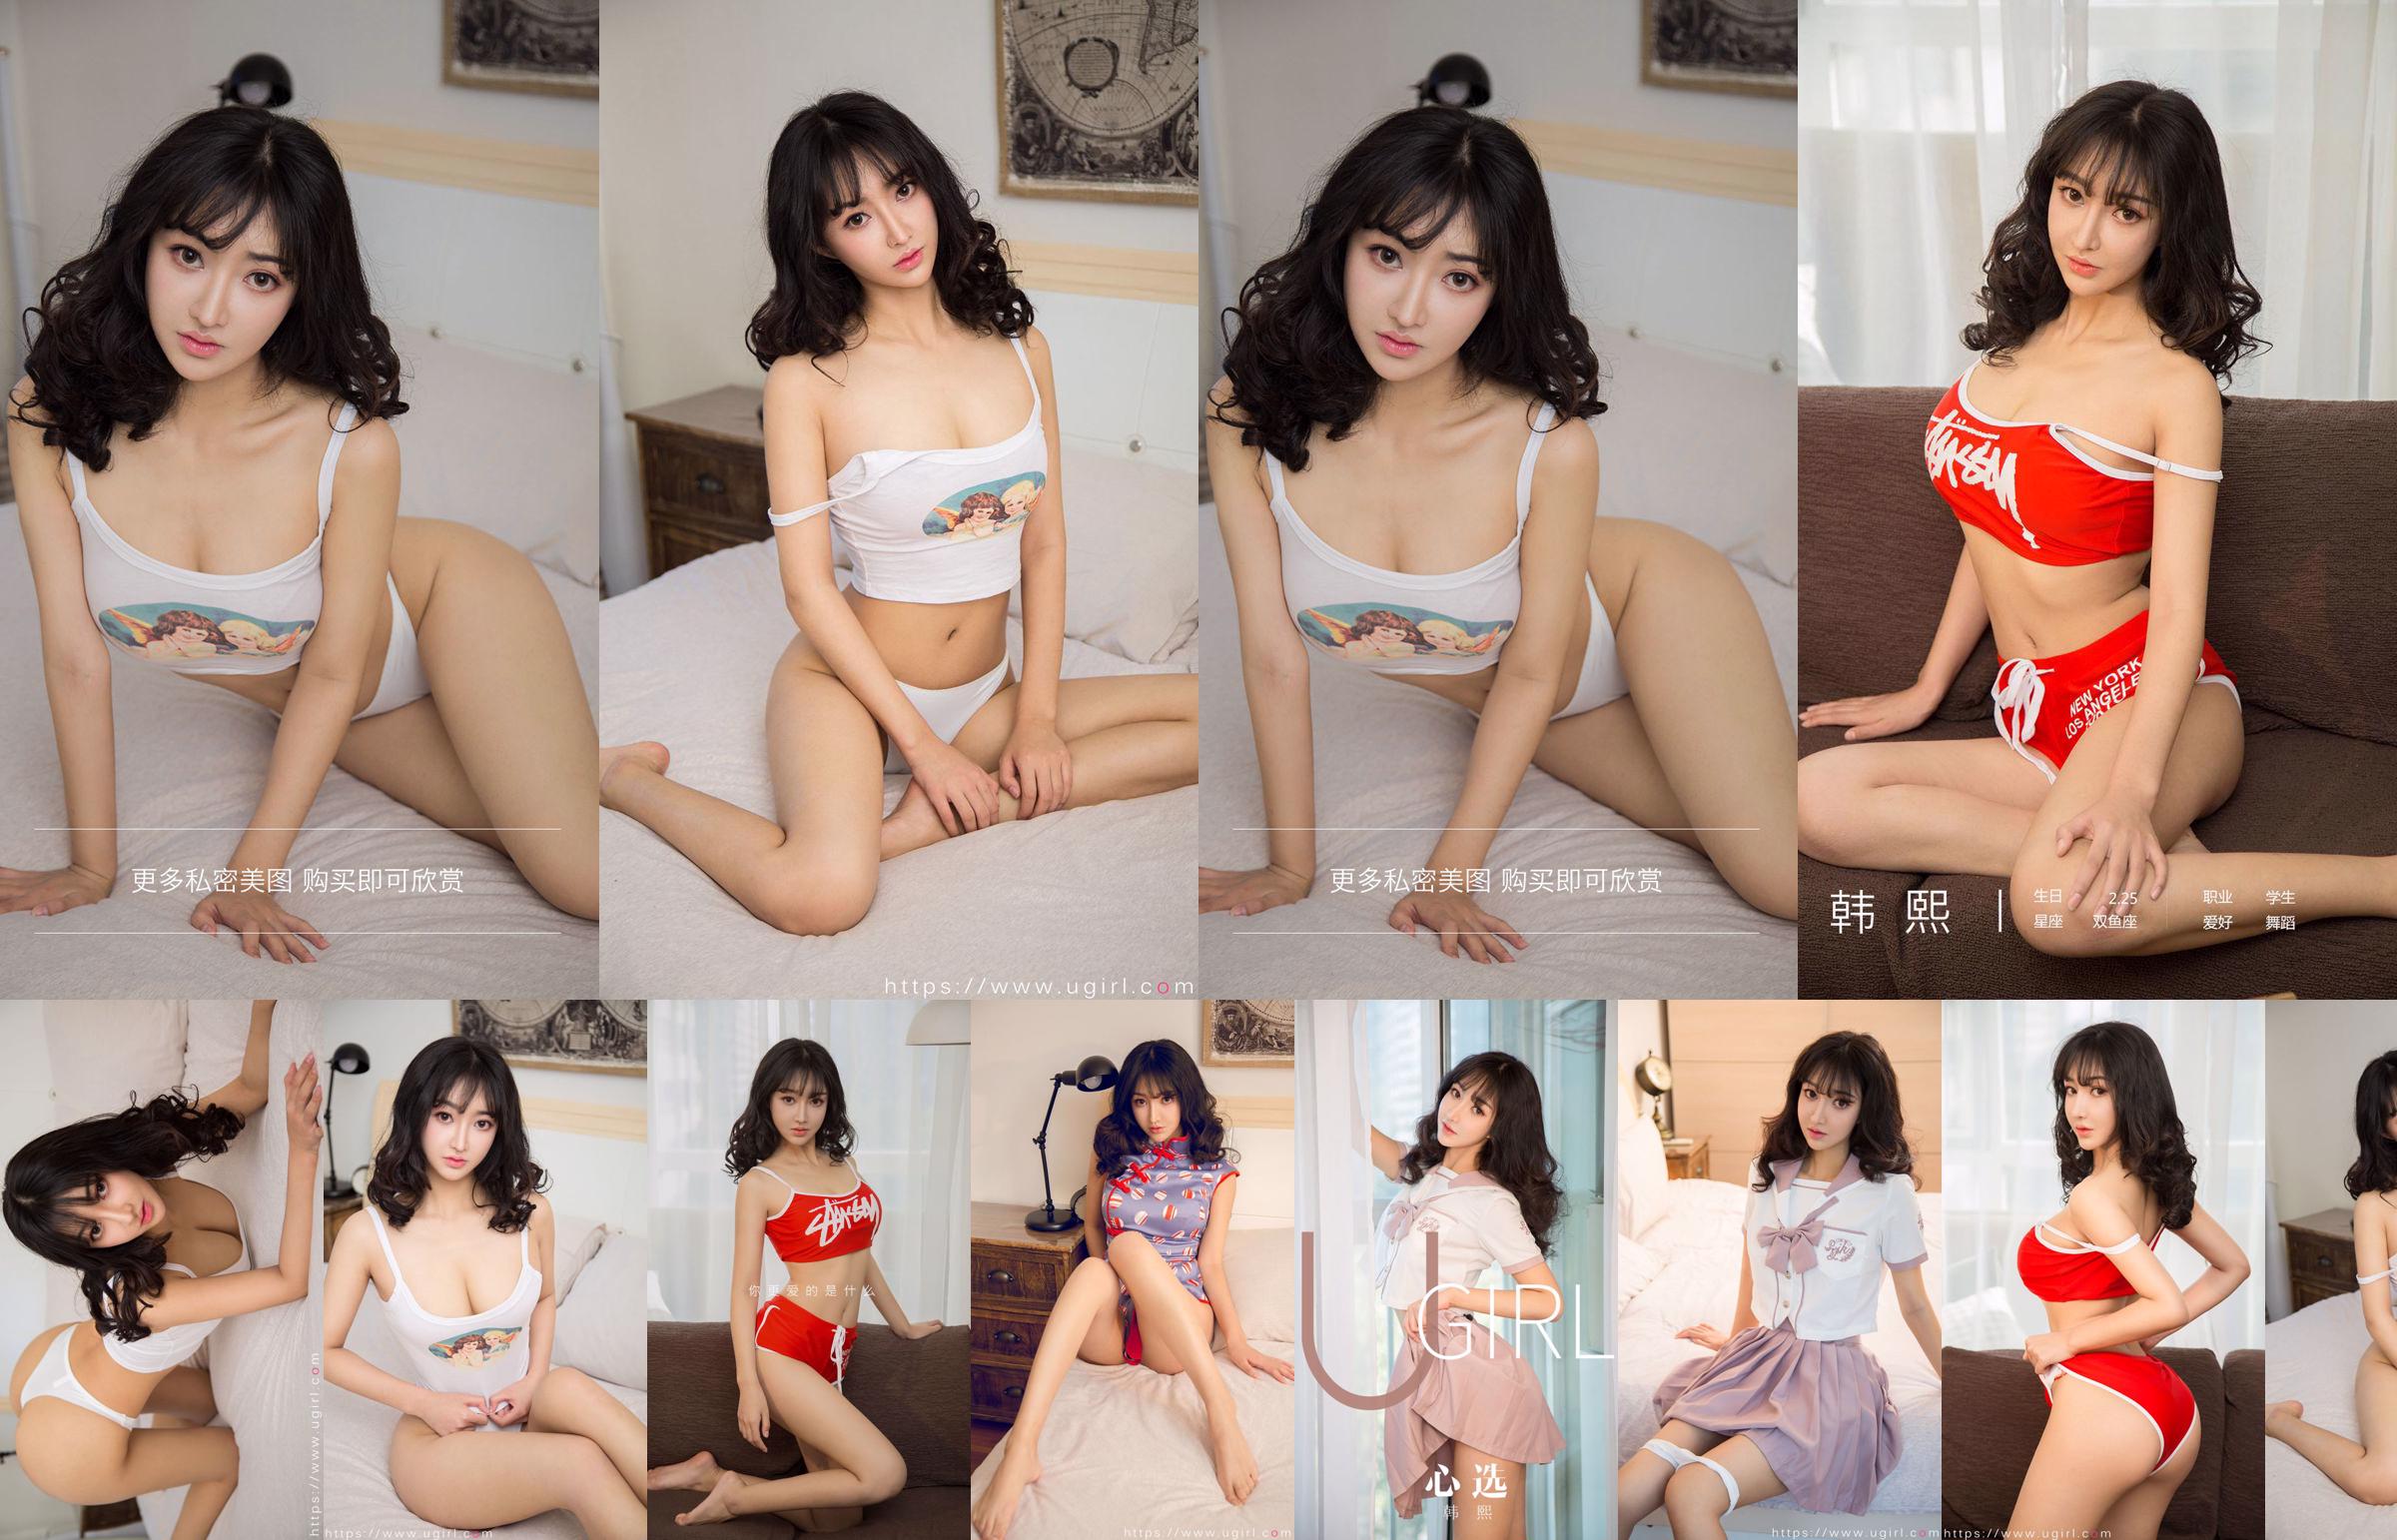 [Thuisbezorging WordGirls] No.812 Xi Shui Shui Beautiful Girl Trainee No.272ac4 Pagina 1